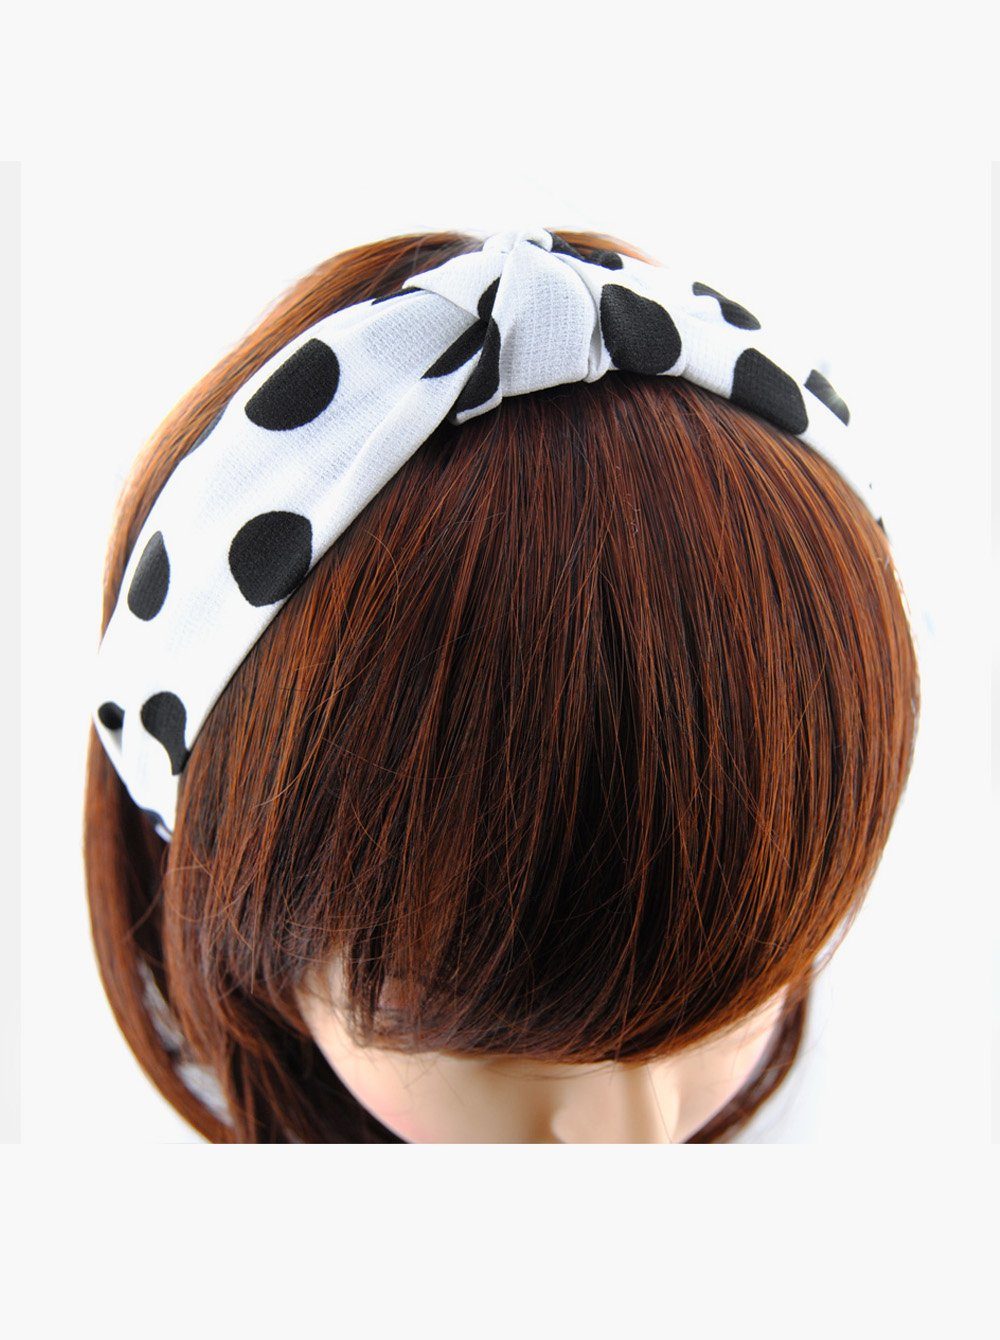 und axy Damen Haarreif Haareifen Klassische Haarreif mit Vintage und Haarband Muster, Punkte Weiß Muster mit Punkte Knoten